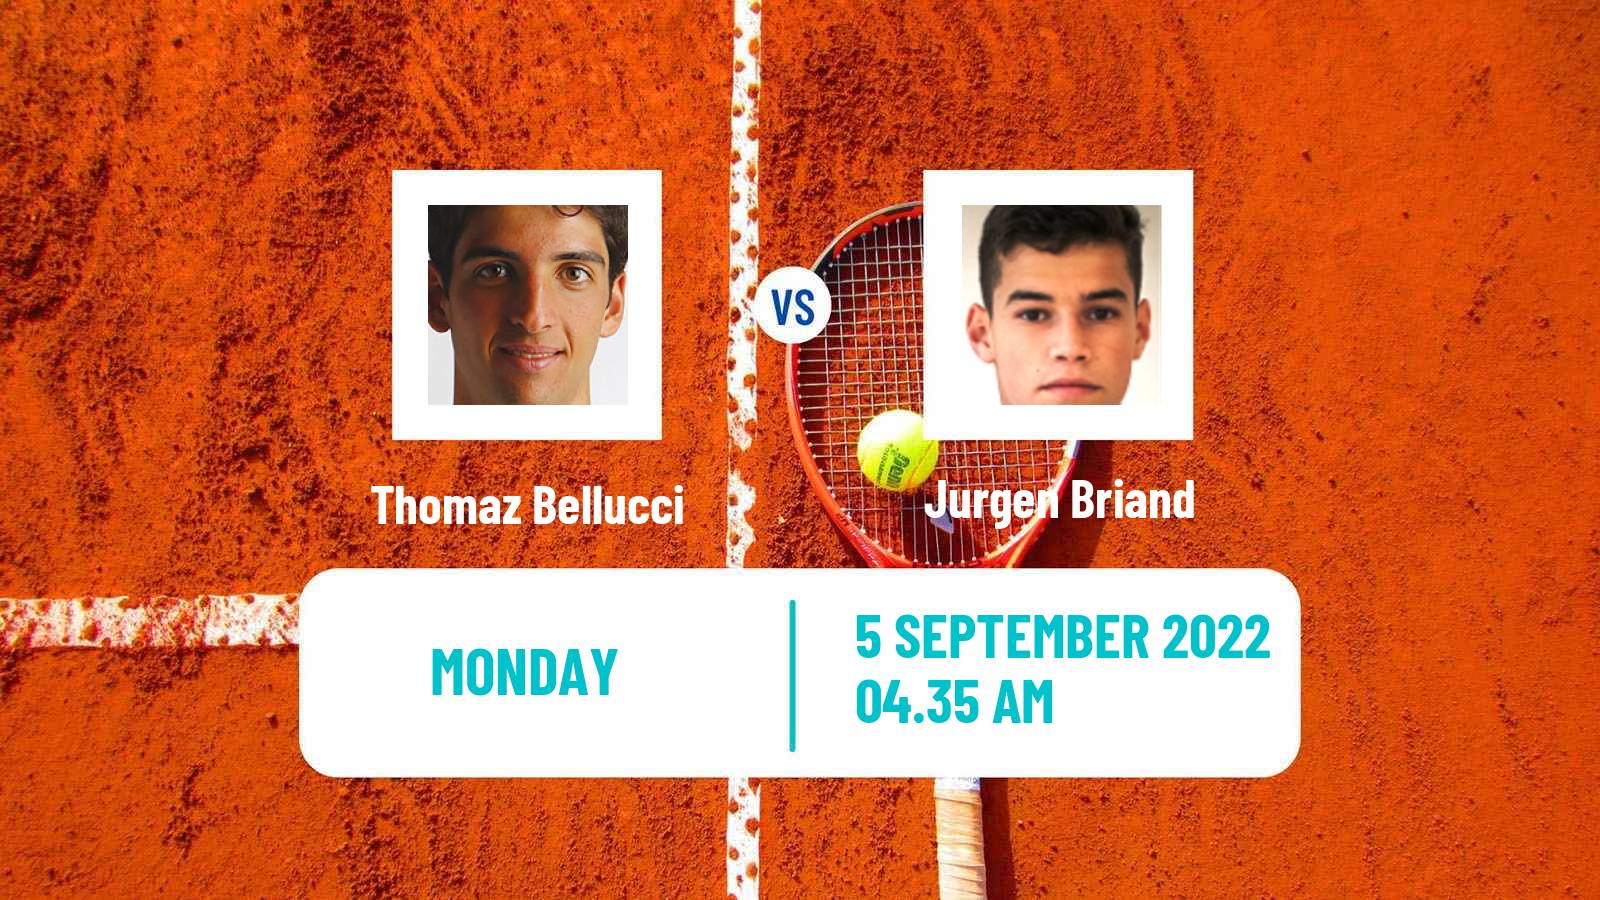 Tennis ATP Challenger Thomaz Bellucci - Jurgen Briand